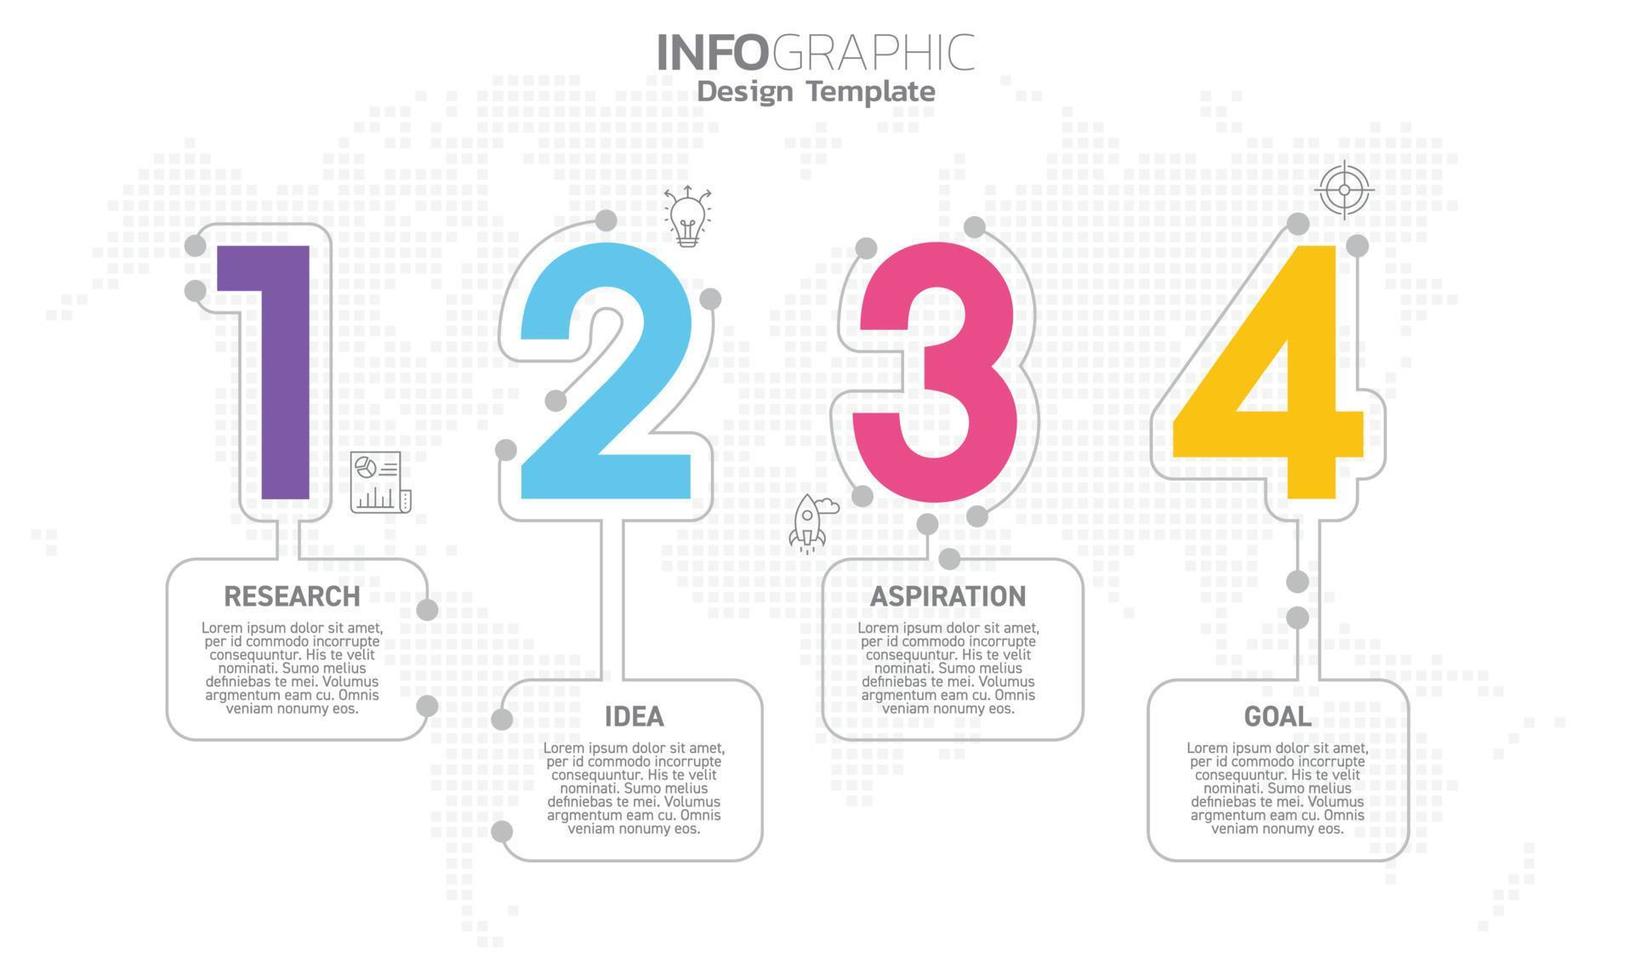 bedrijf infographic 4 stappen naar succes met Onderzoek idee inspiratie en doel. vector